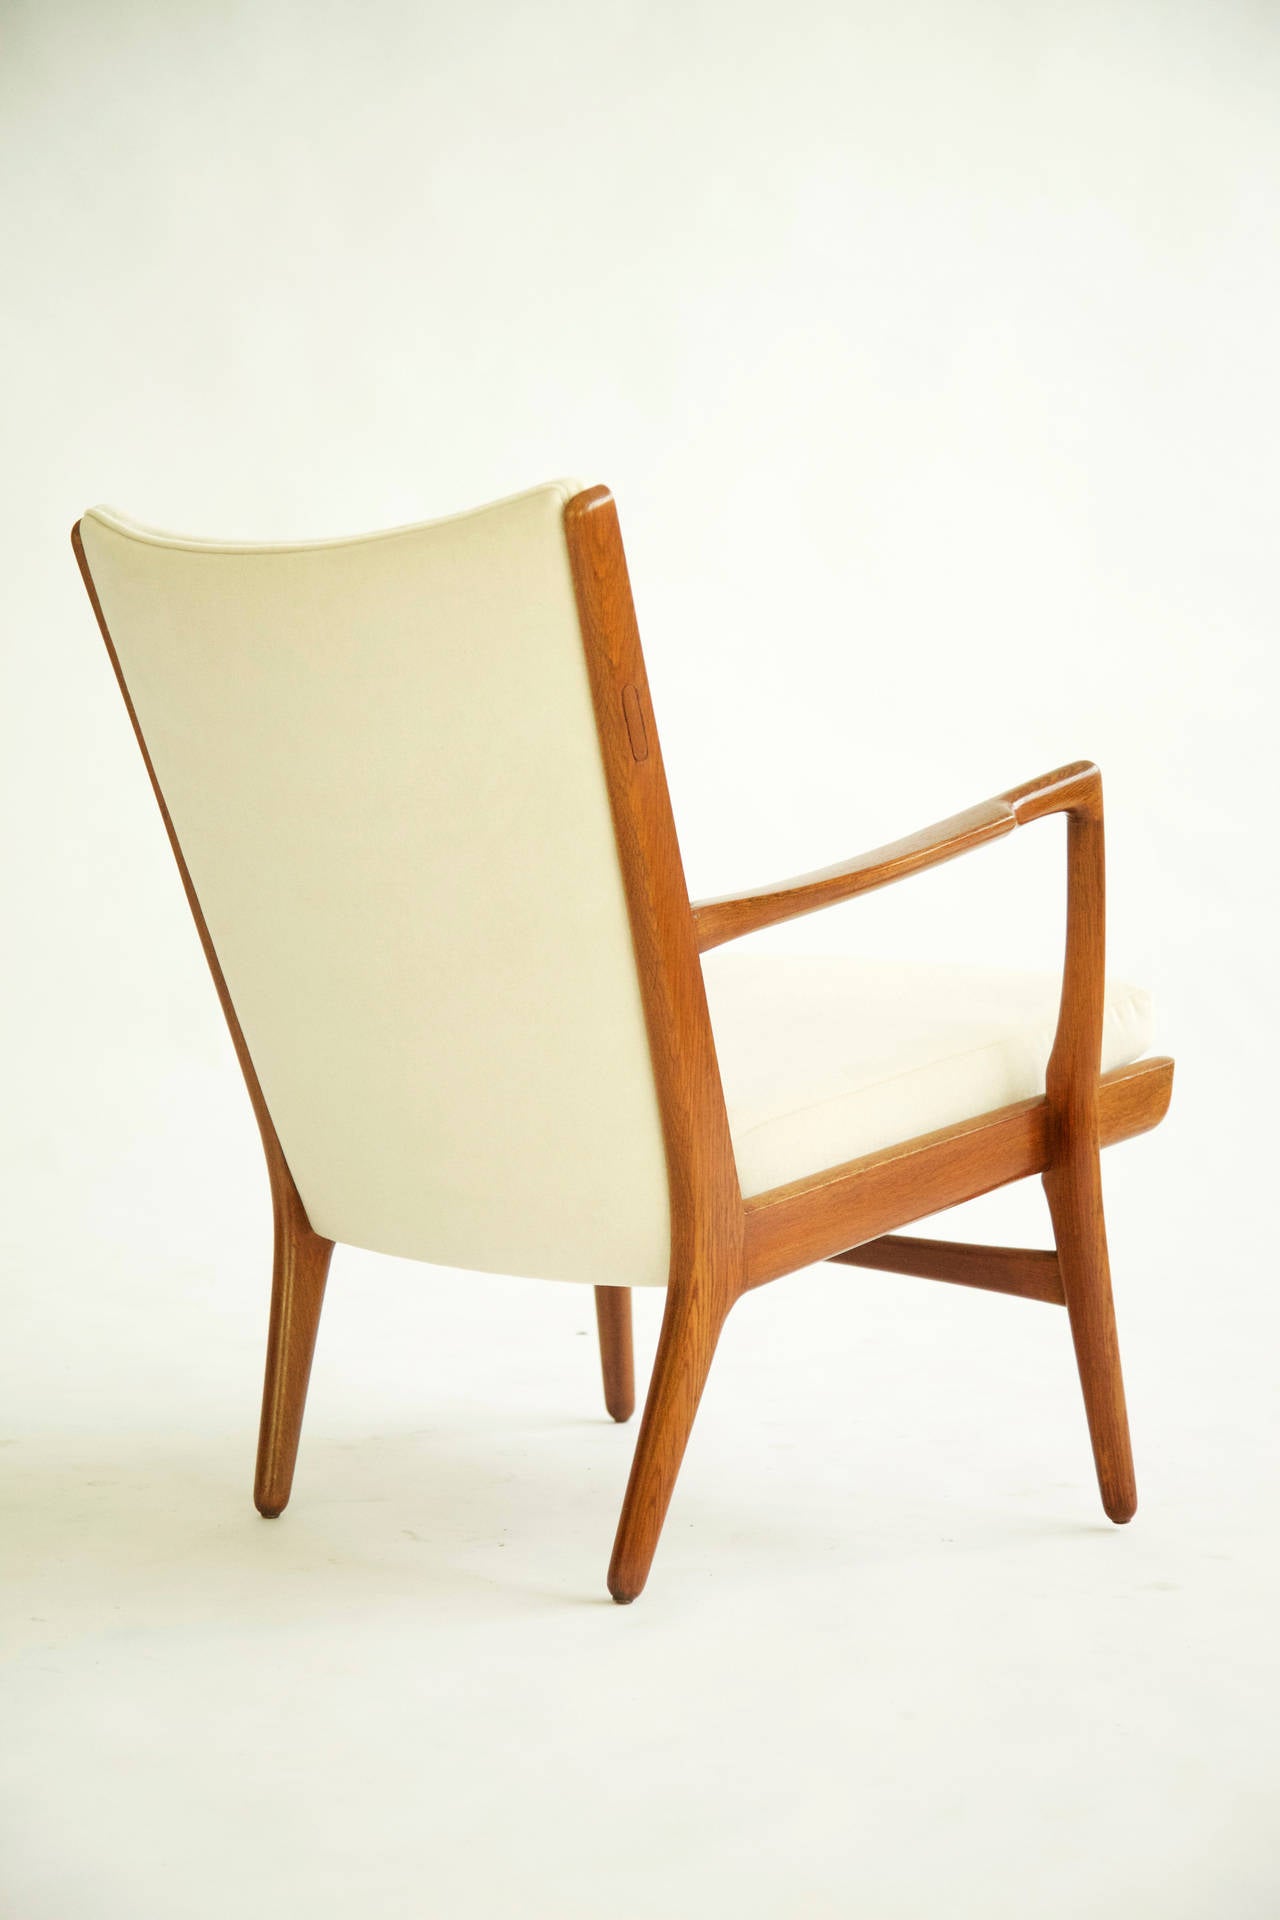 Danish Hans Wegner Pair of Lounge Chairs